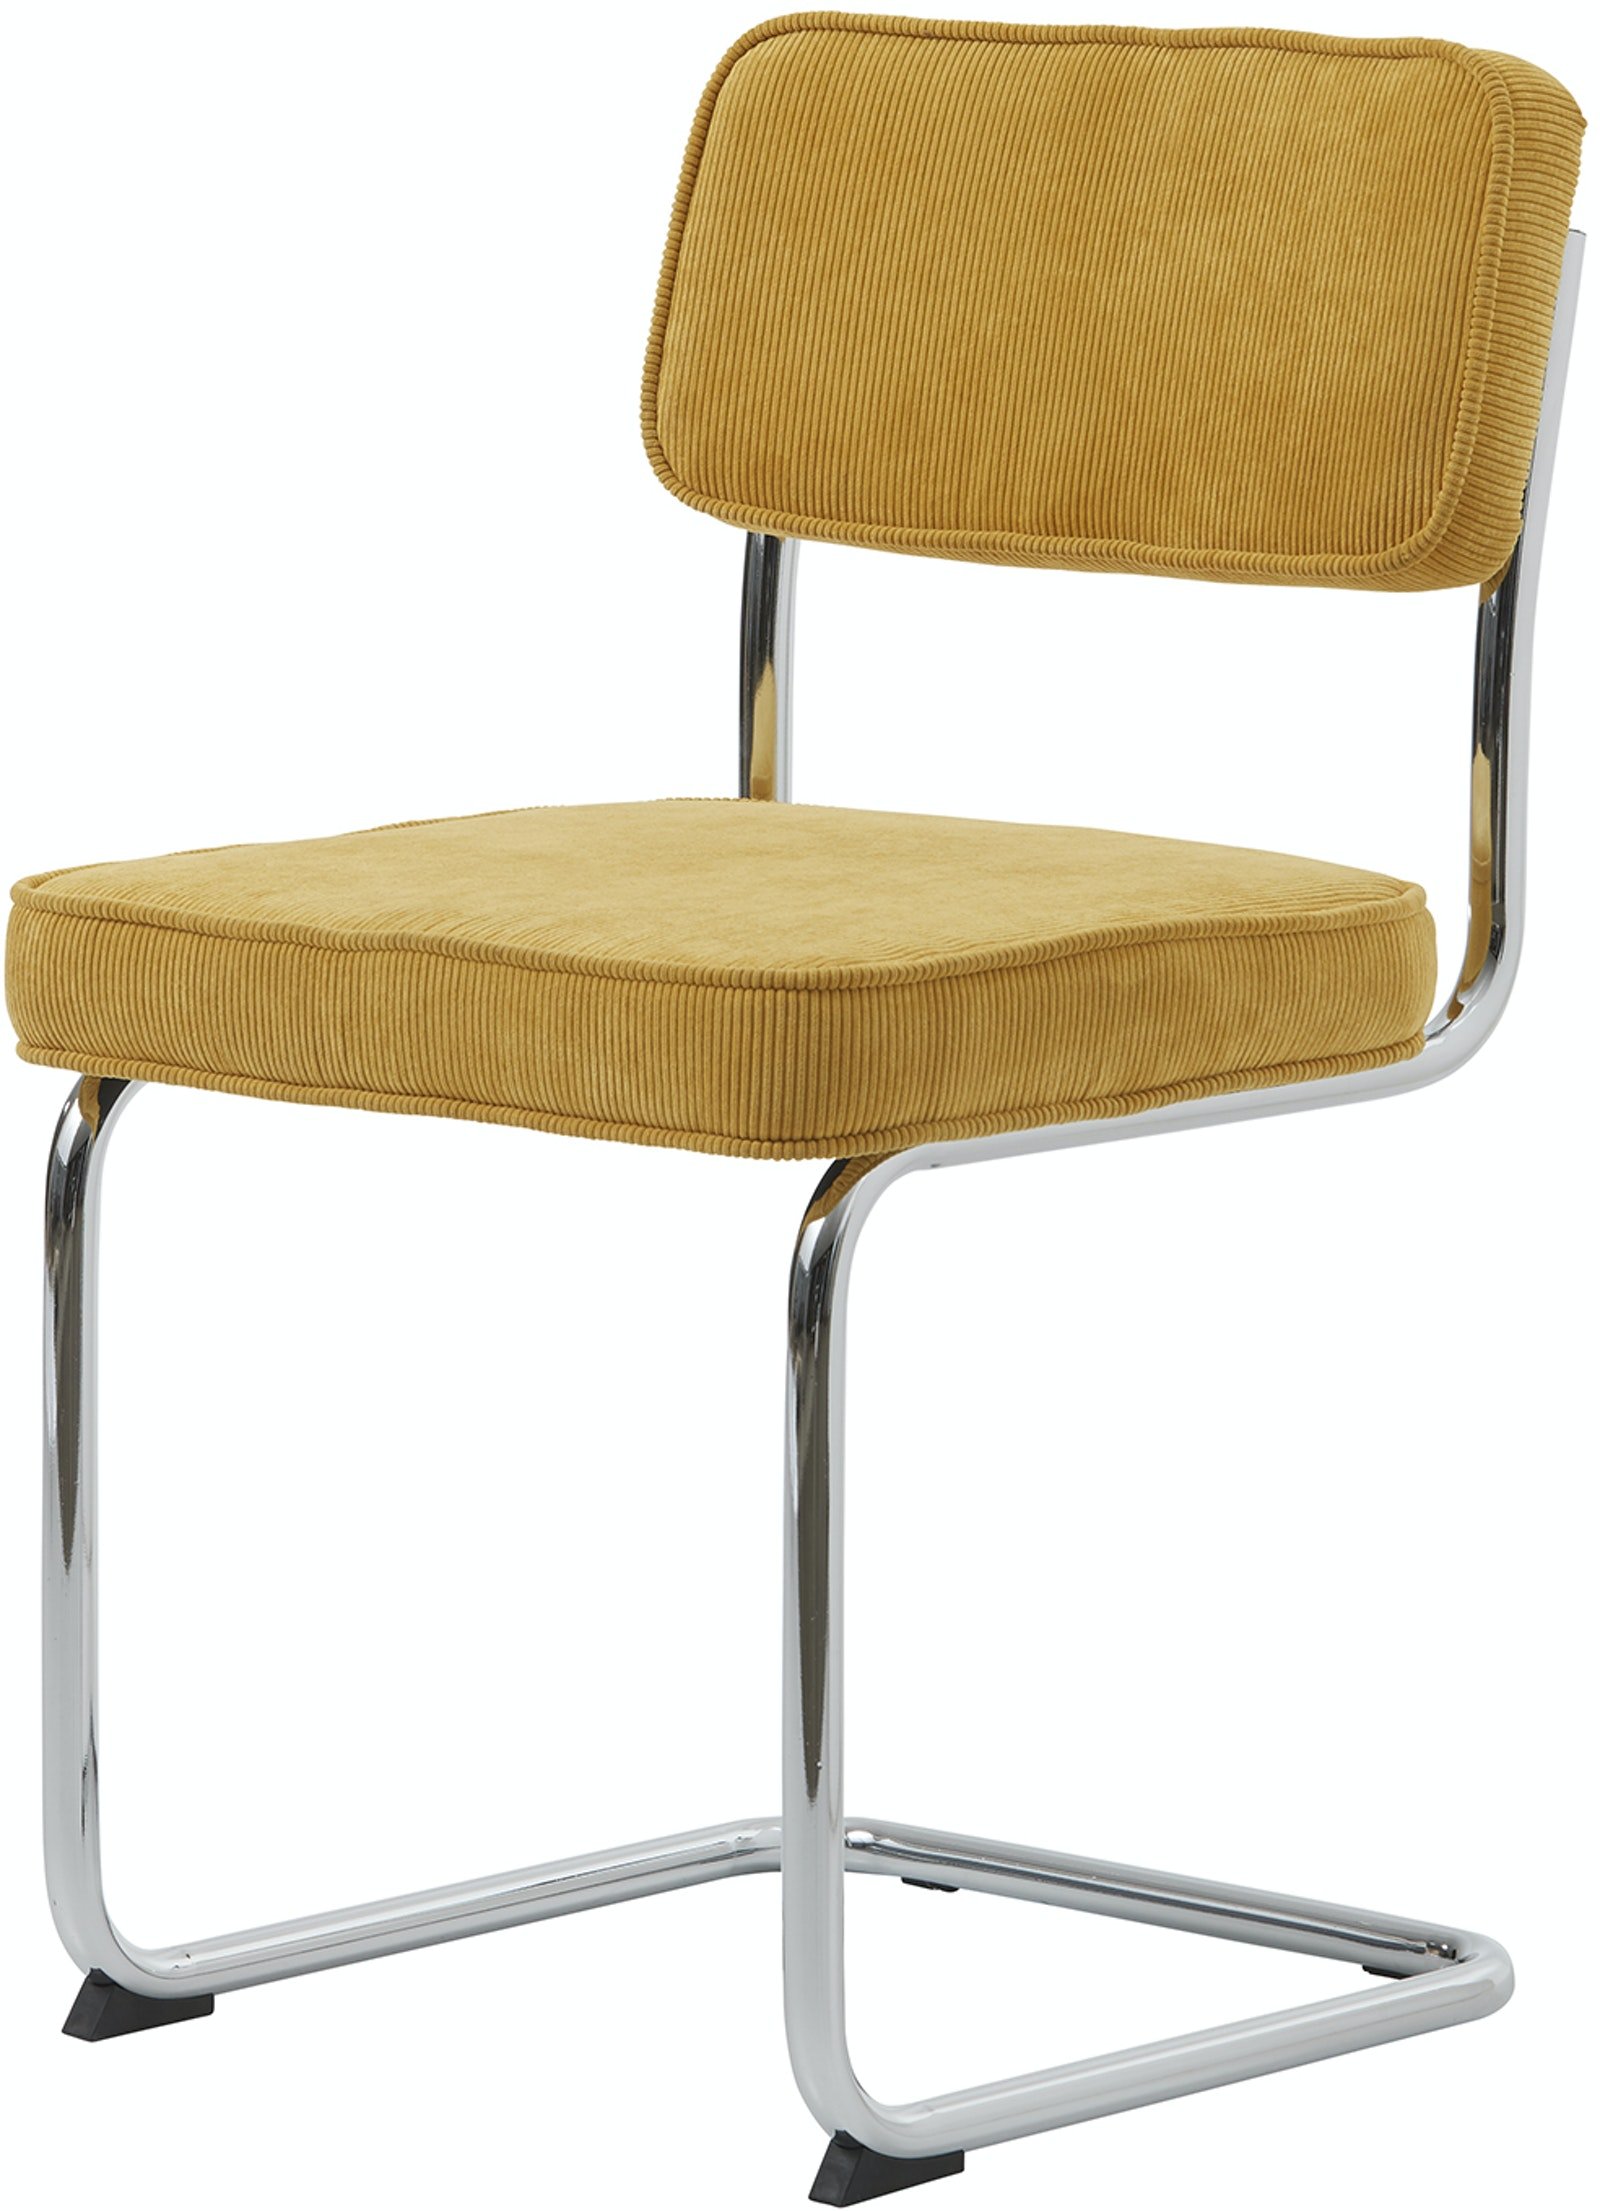 På billedet ser du variationen Rupert, Spisebordsstol, Stof fra brandet Unique Furniture i en størrelse H: 84 cm. x B: 50 cm. x L: 53 cm. i farven Gul/Krom